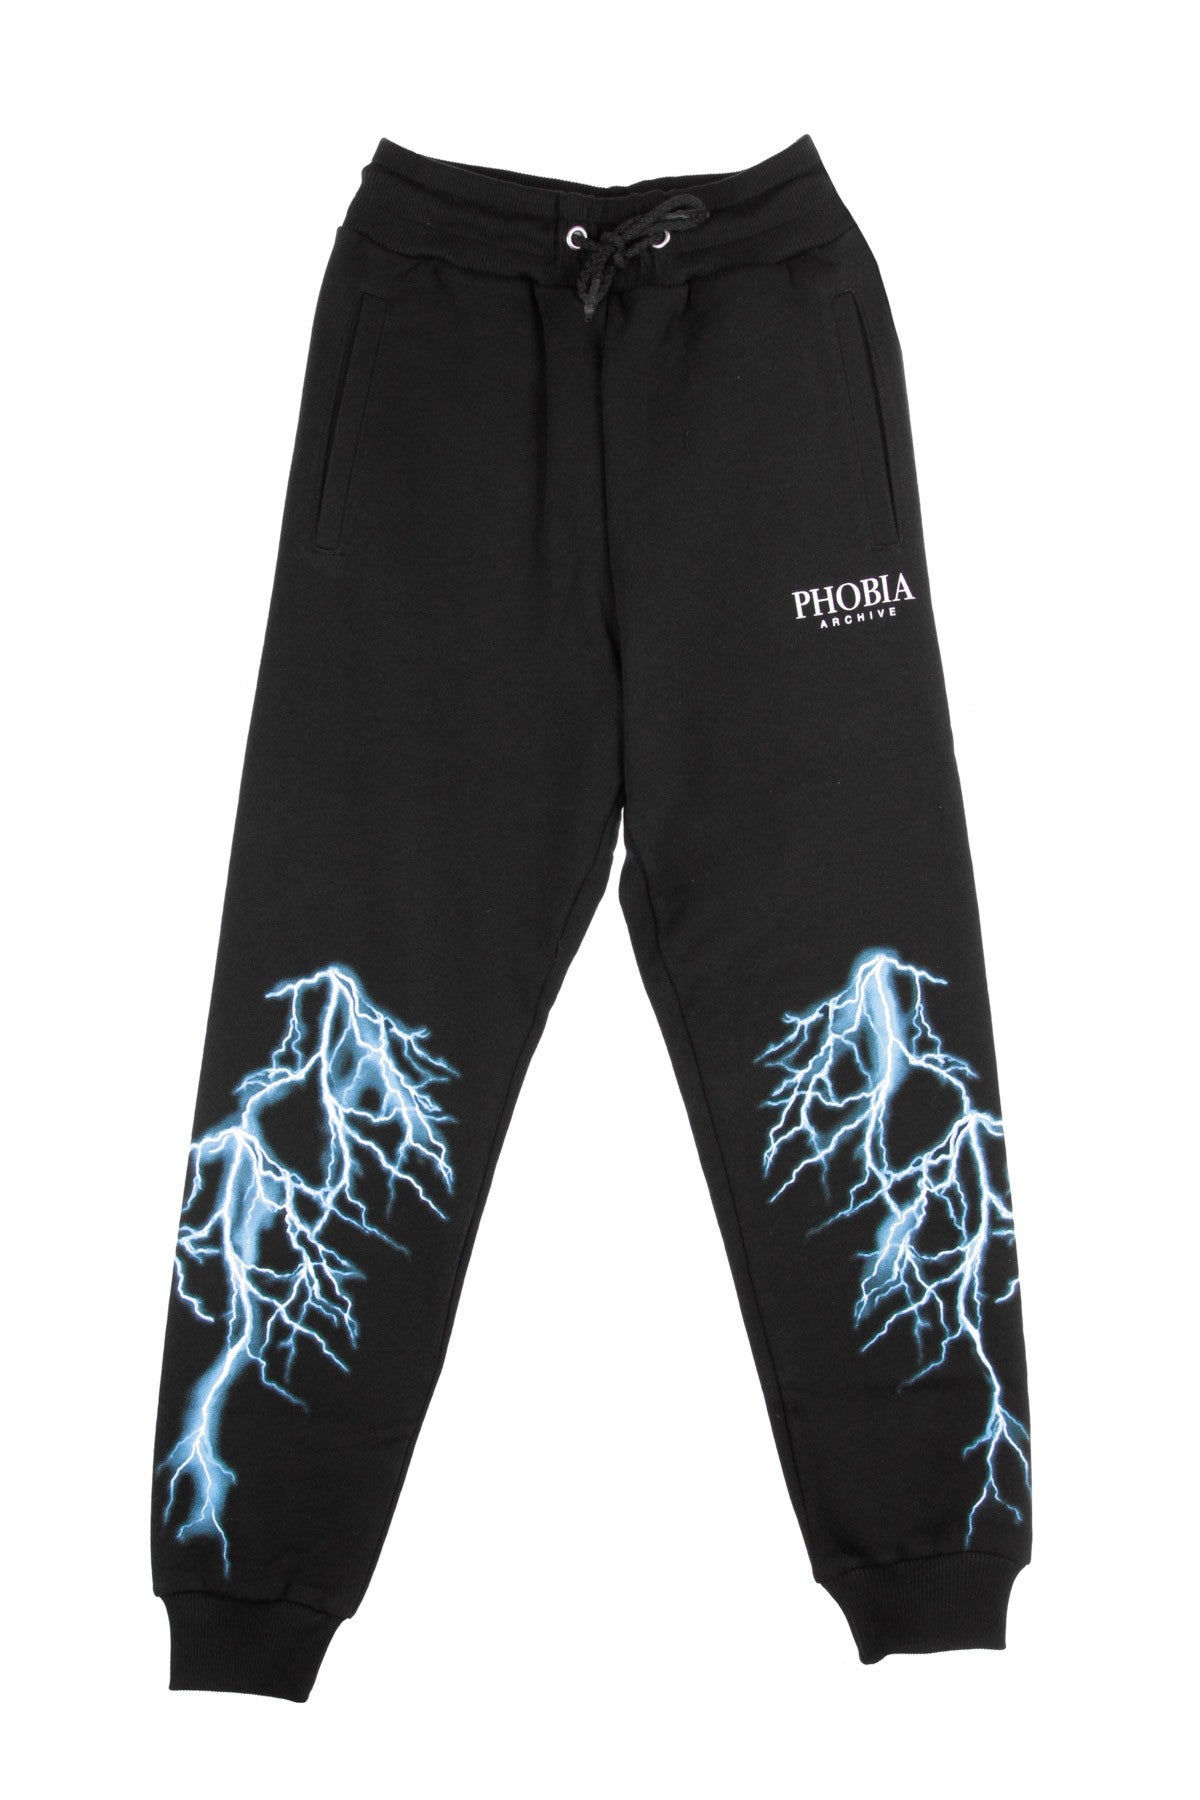 Phobia, Pantalone Tuta Leggero Uomo Light Blue Lightning Pants, Black/light Blue